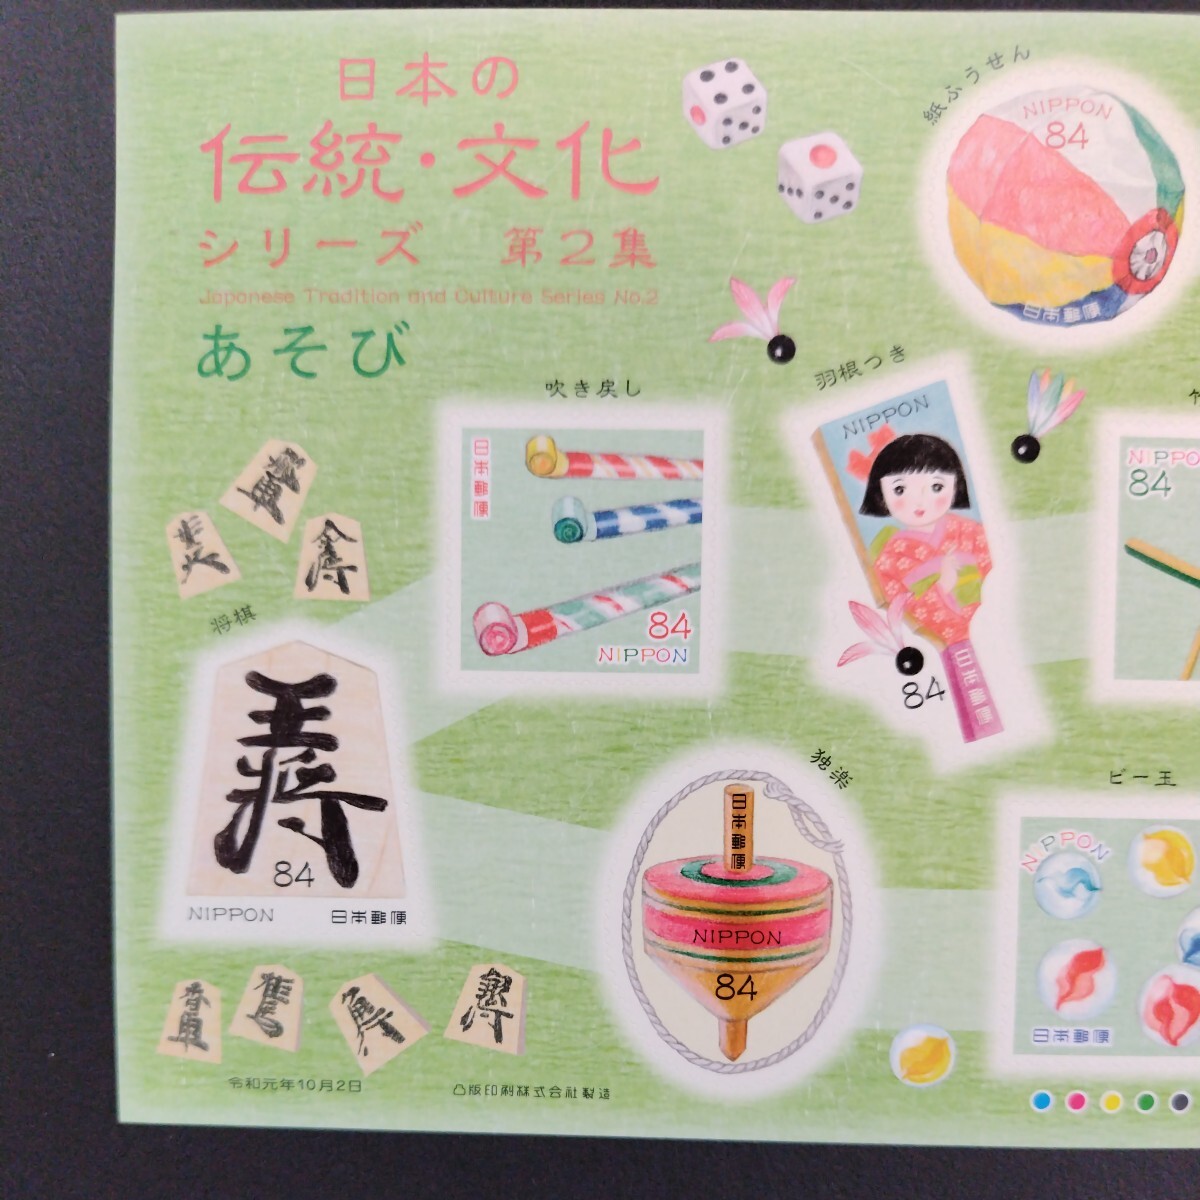 令和元年発行特殊切手(シール式)、「日本の伝統・文化シリーズ第2集亅、63円10枚、84円10枚、2シート、総額1,470円。リーフレット2枚付き。_画像7